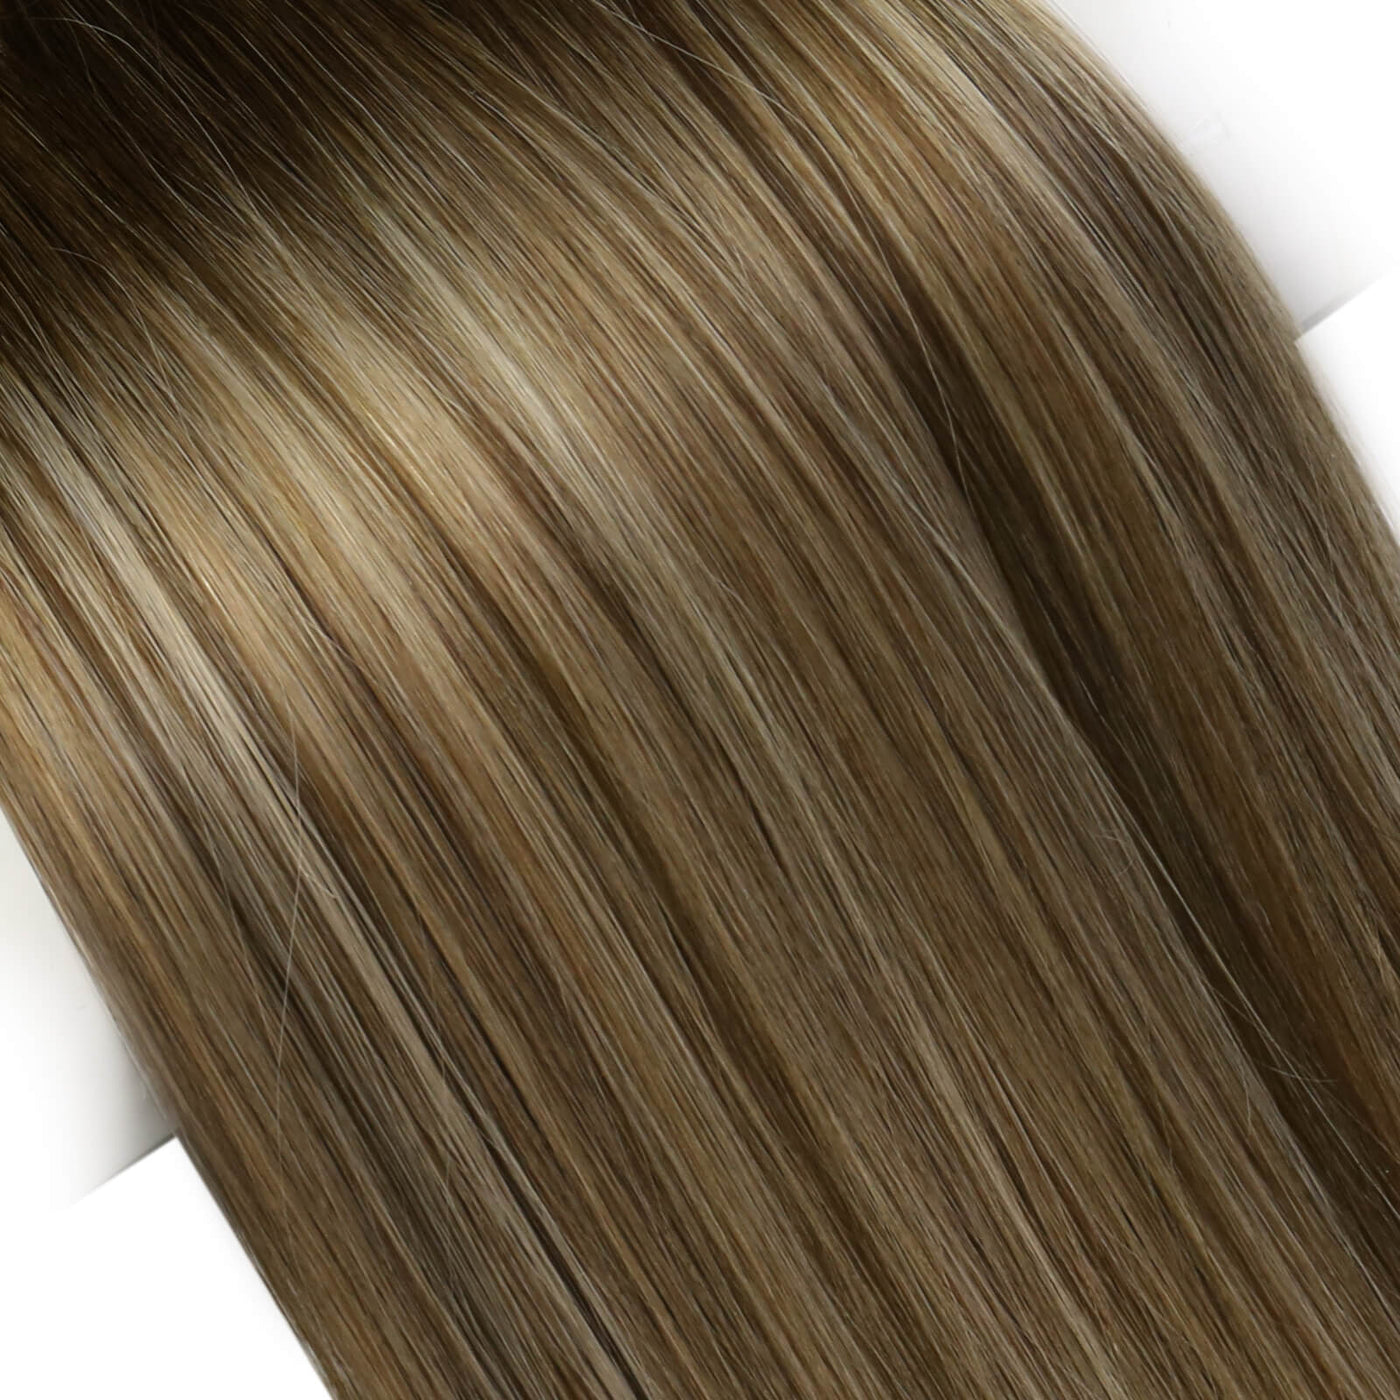 Virgin Weft Extensions Bundles Weave Real Hair Genius Weft 100% Human Hair Balayage #4/8/27/4